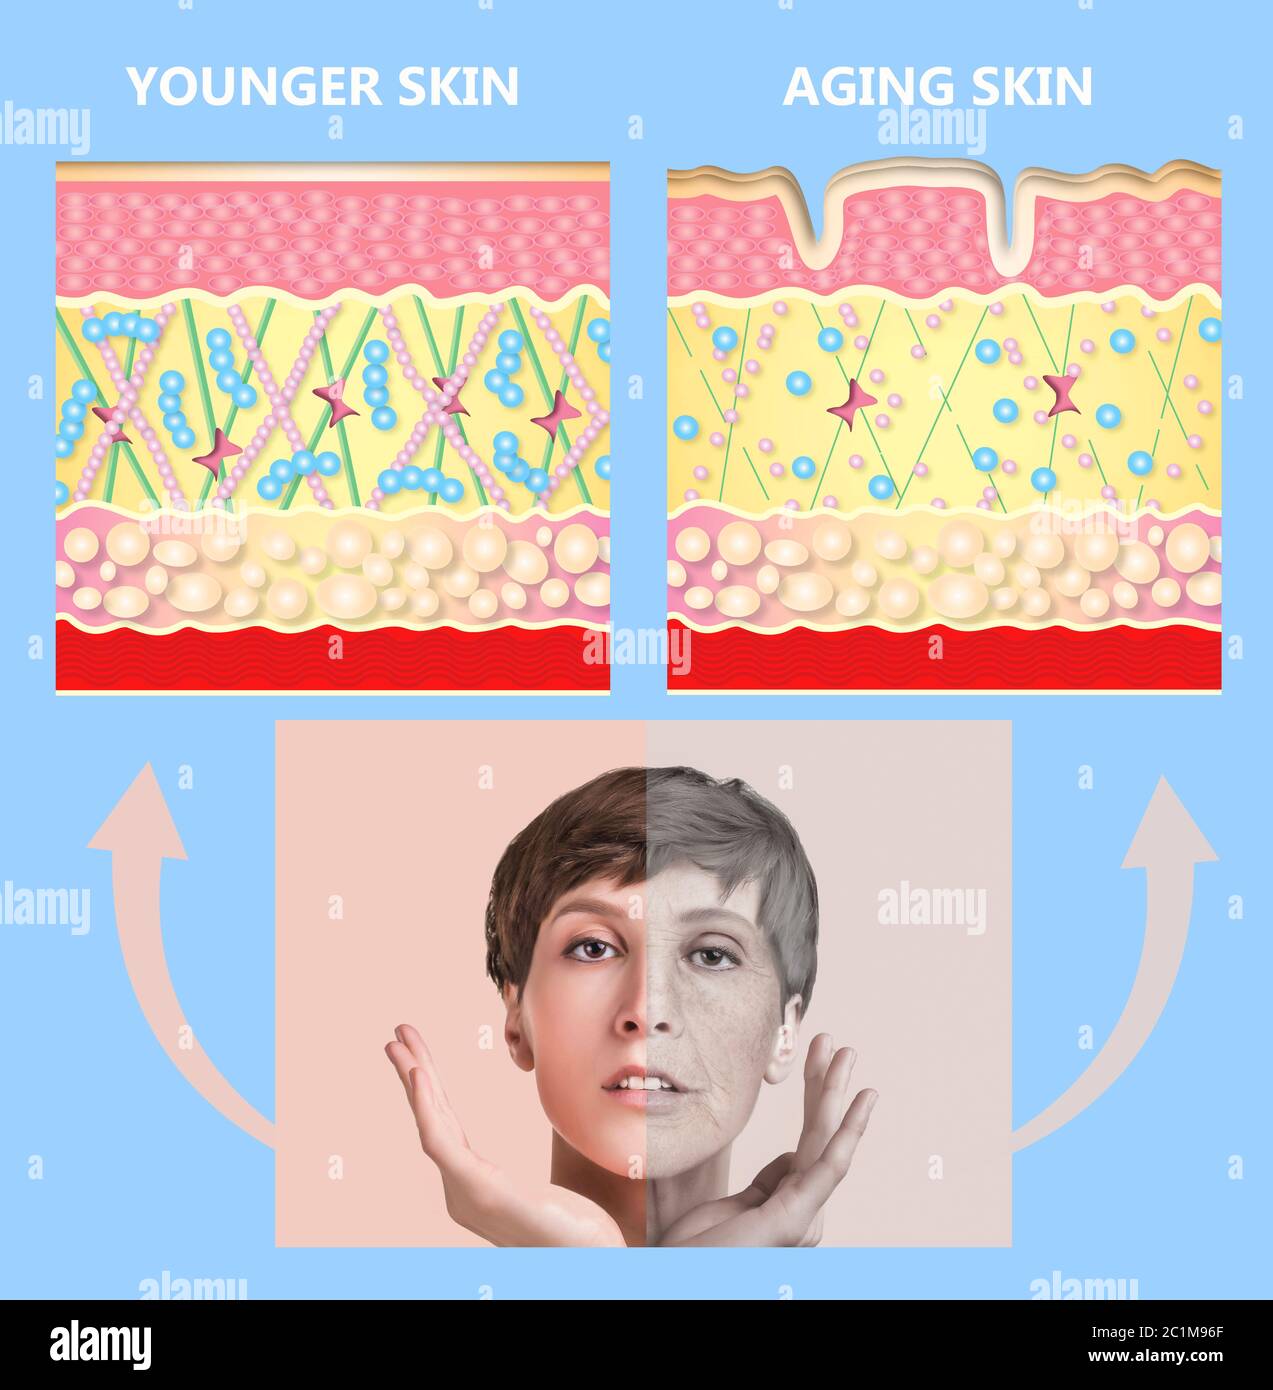 Le plus jeune peau et vieillissement de la peau. L'élastine et du collagène. Un diagramme de jeunes et vieux visage montrant la diminution de collagène et élastine cassé. Banque D'Images